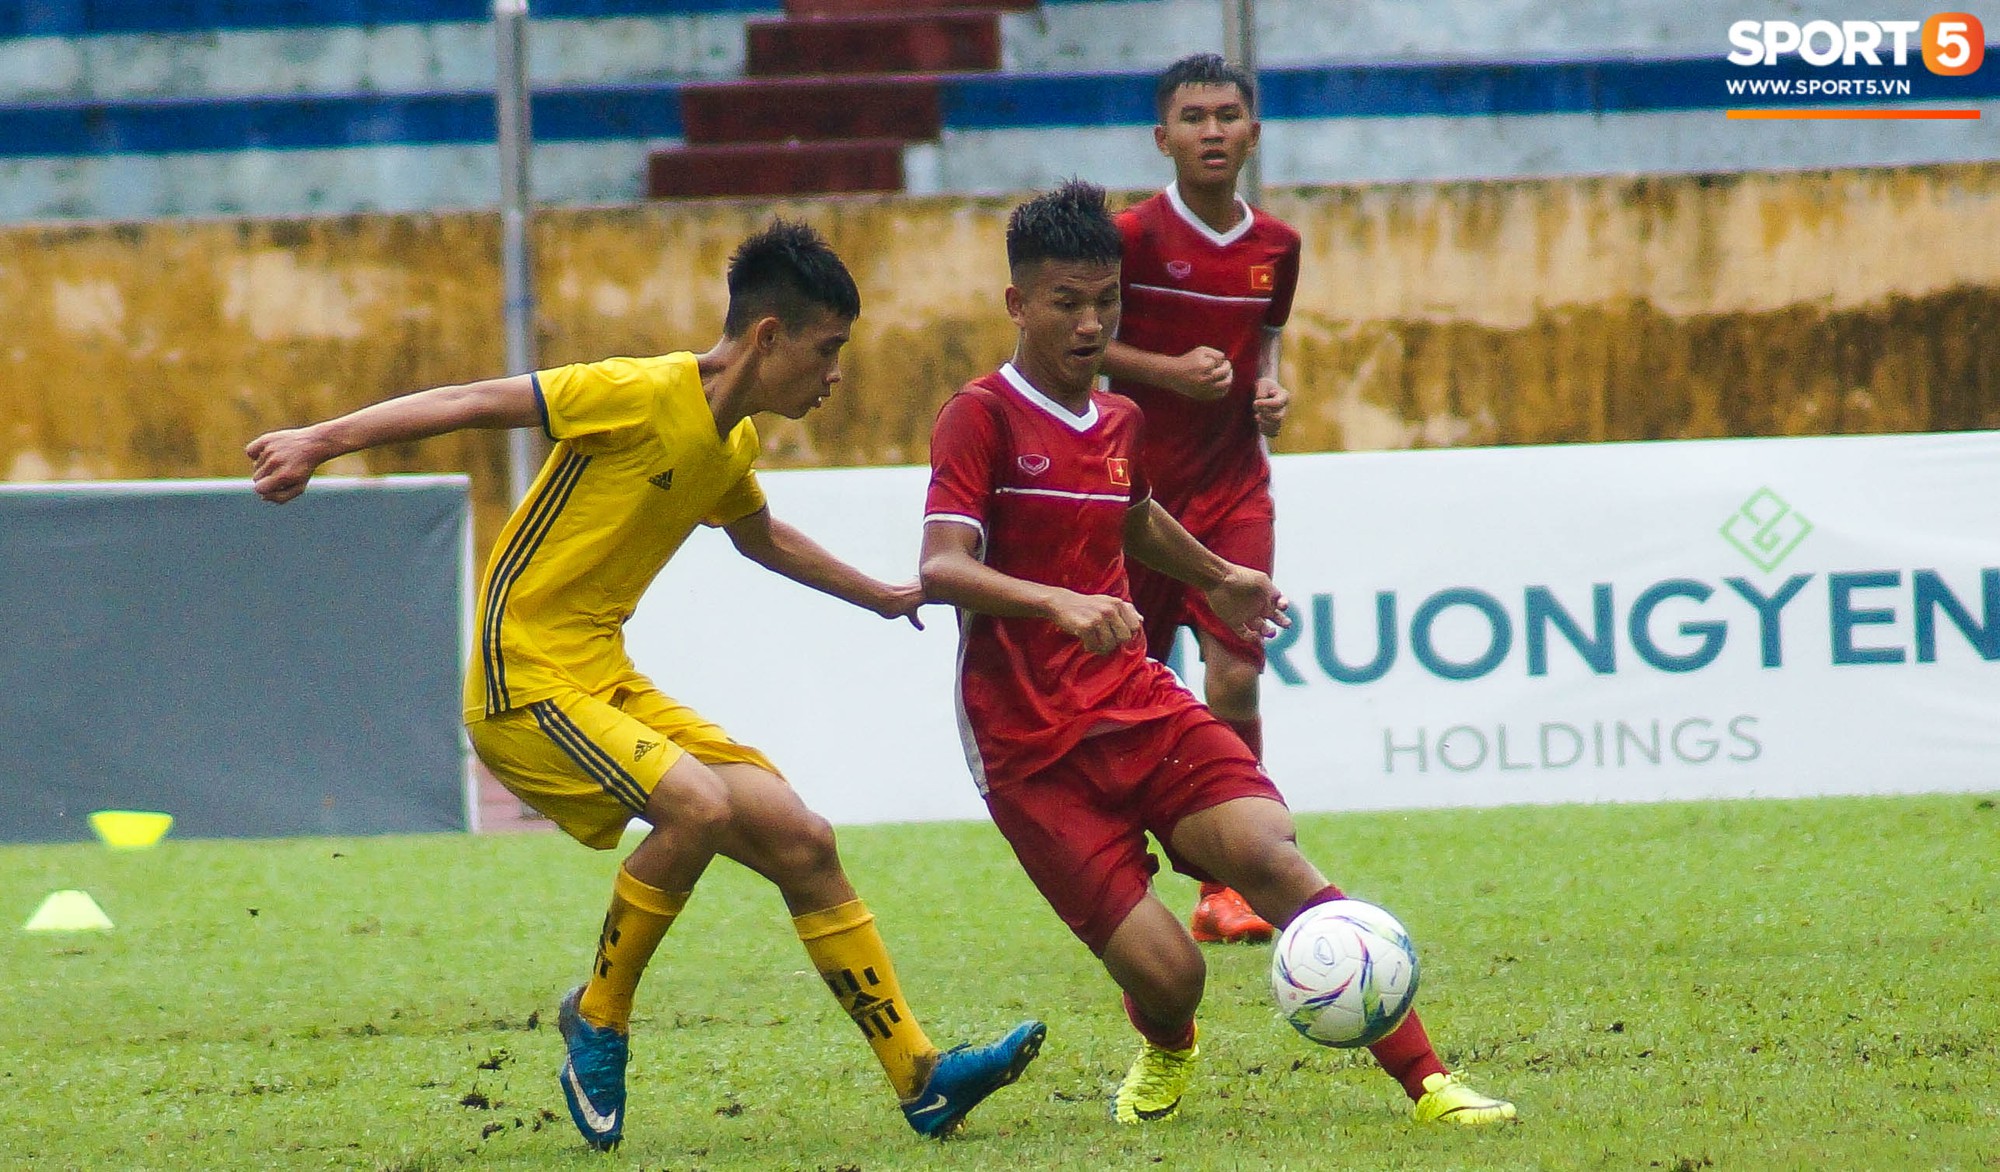 U16 Việt Nam cầm hoà đàn anh U19 1-1 dưới trời mưa tại Nam Định - Ảnh 5.